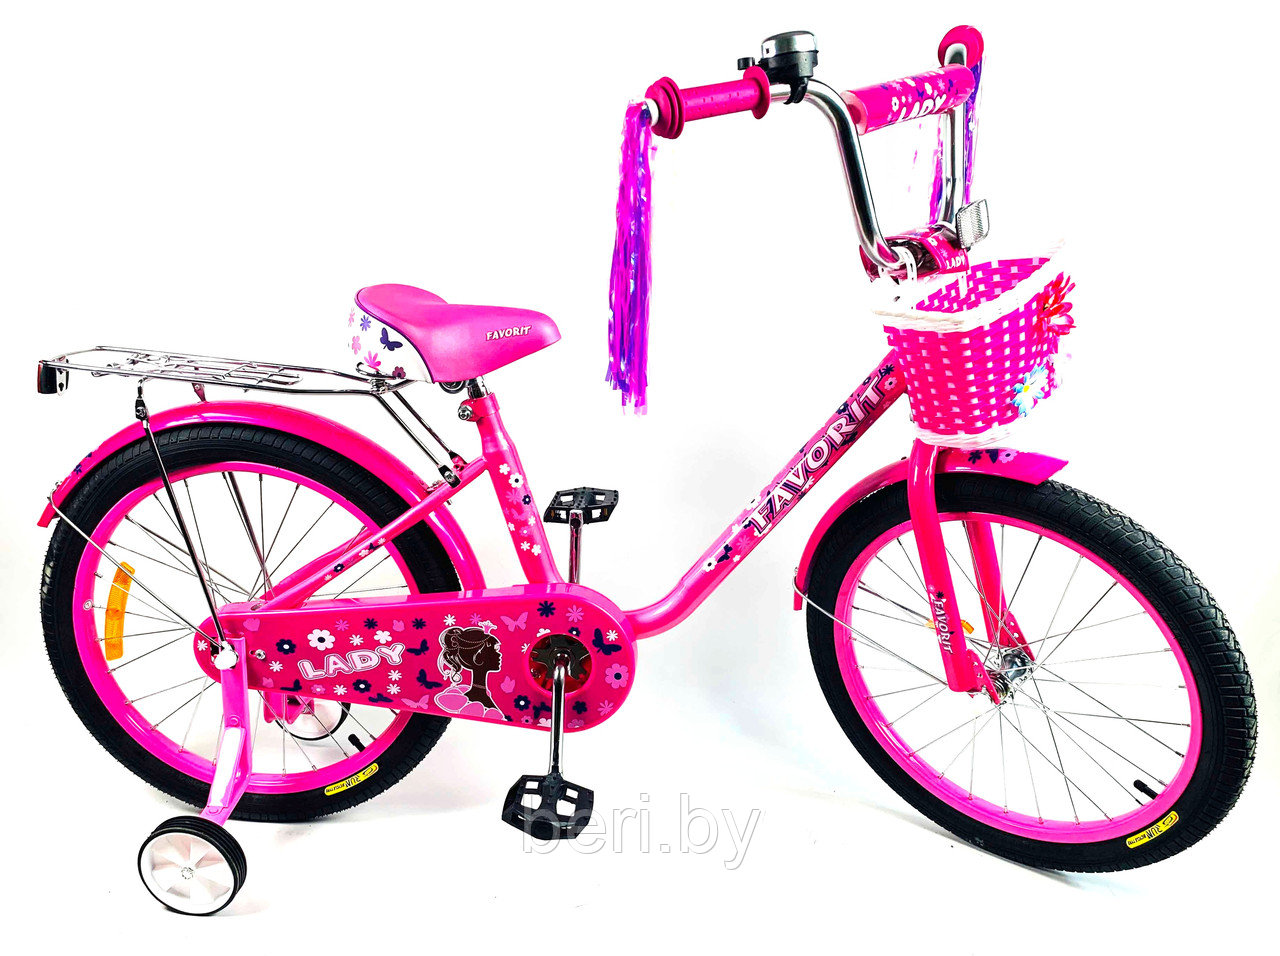 LAD-16RS Детский велосипед Favorit Lady 16", 4-6 лет